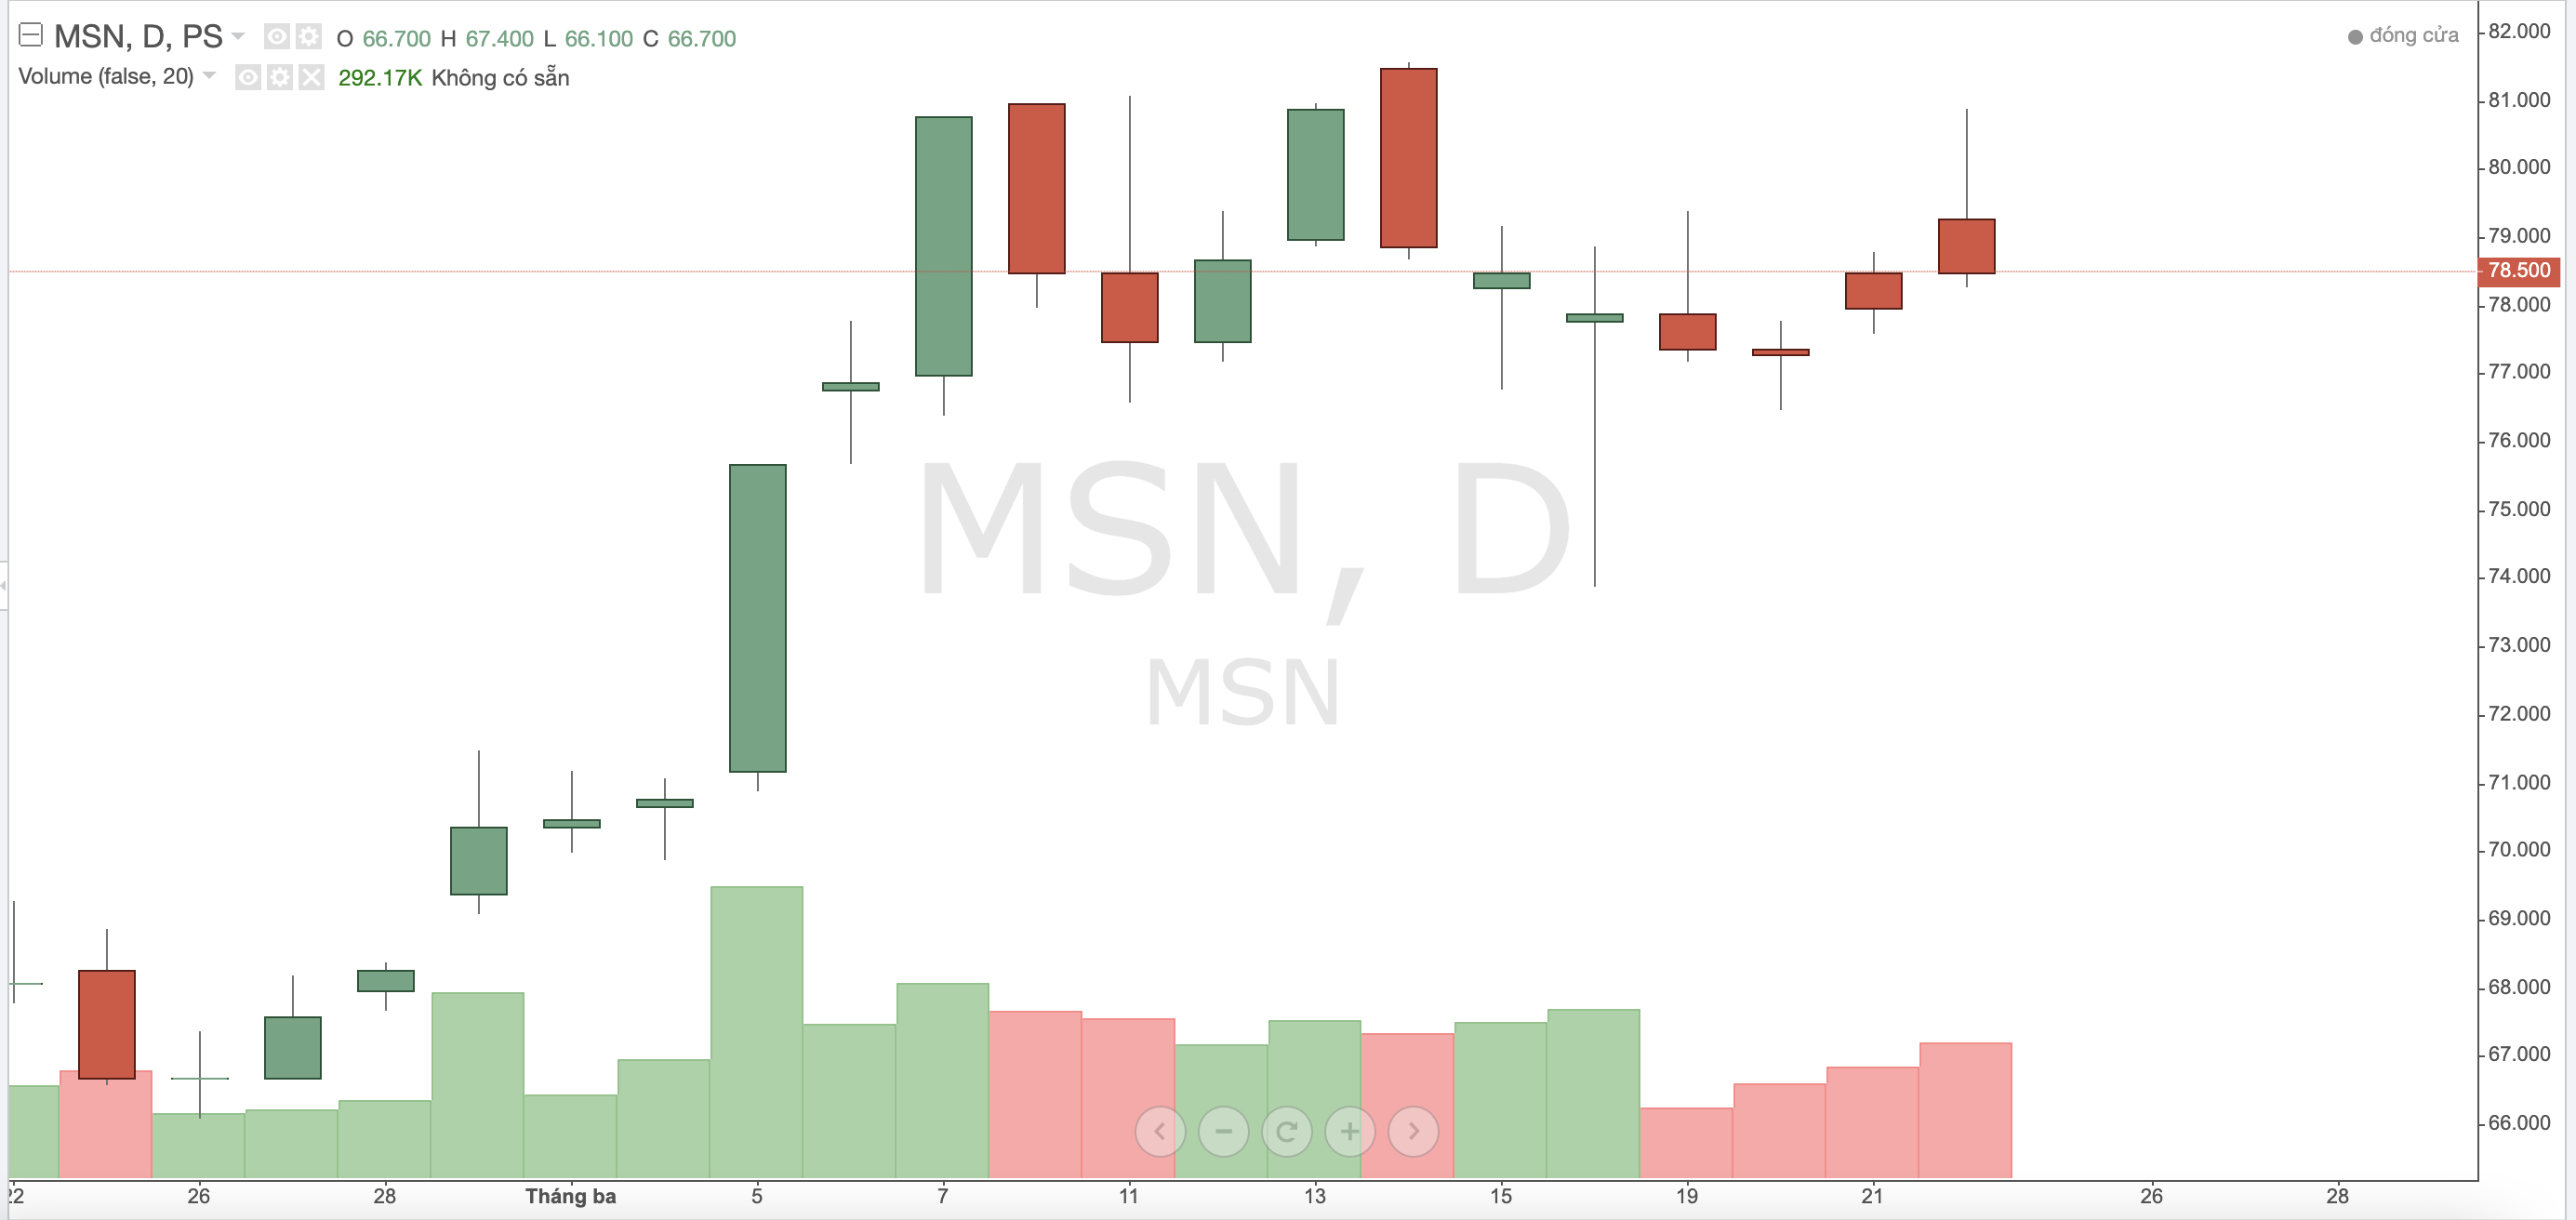 Quỹ Chính phủ Singapore rời ghế cổ đông lớn tại Tập đoàn Masan sau khi bán ra gần 550.000 cổ phiếu MSN